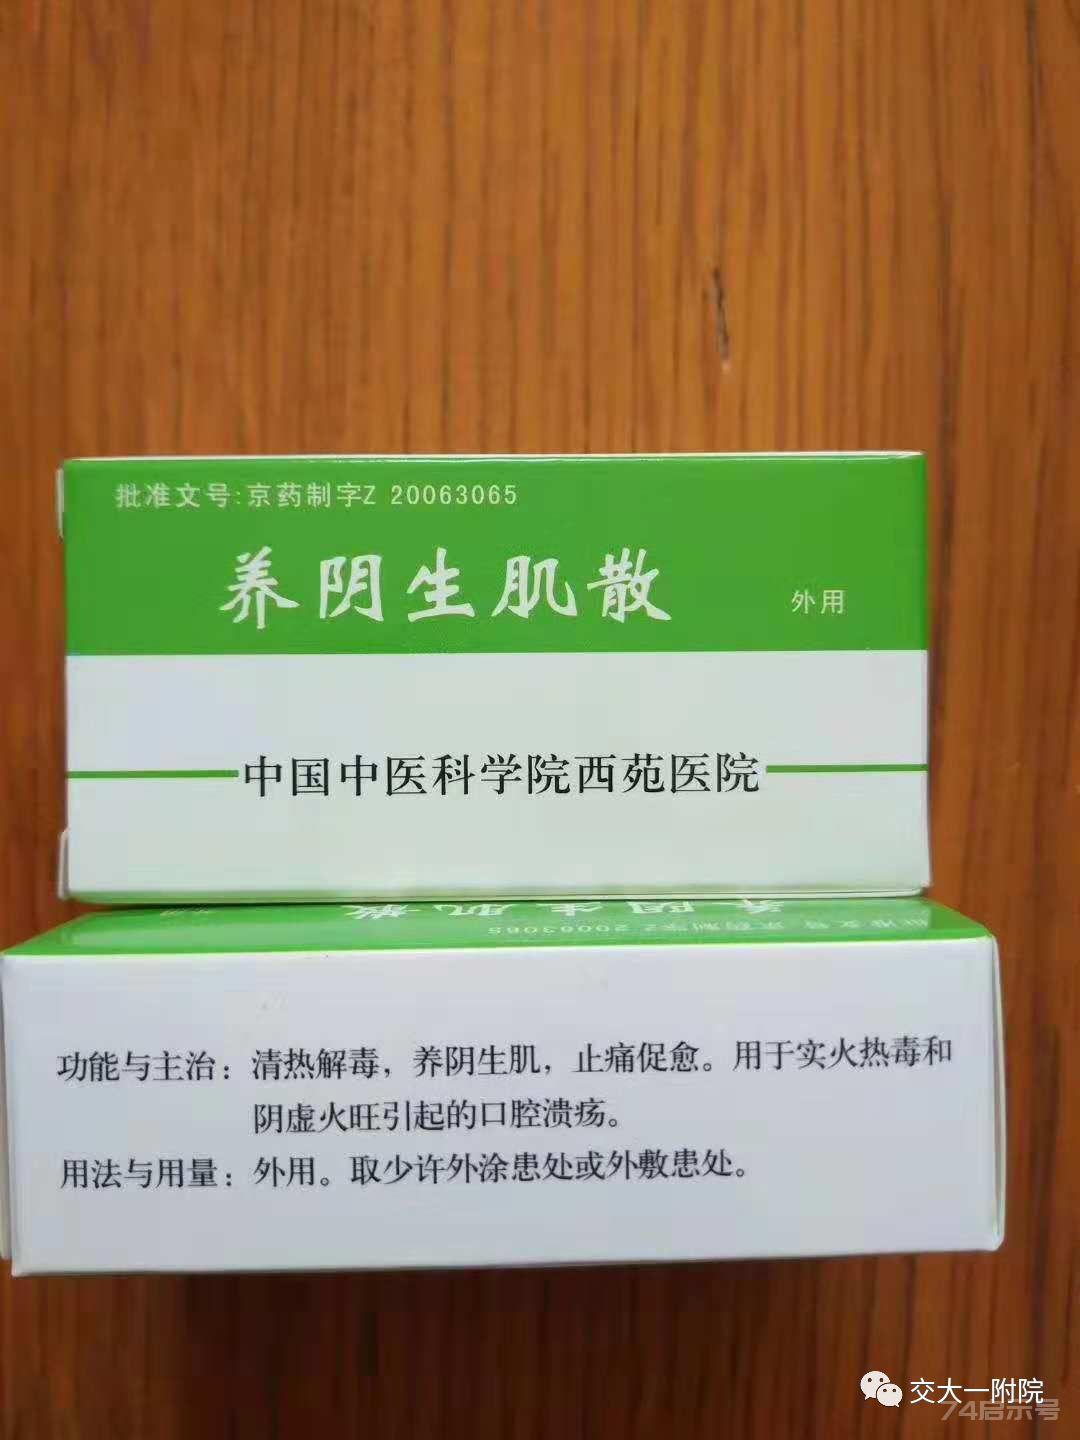 中国中医科学院西苑医院 30款特效药